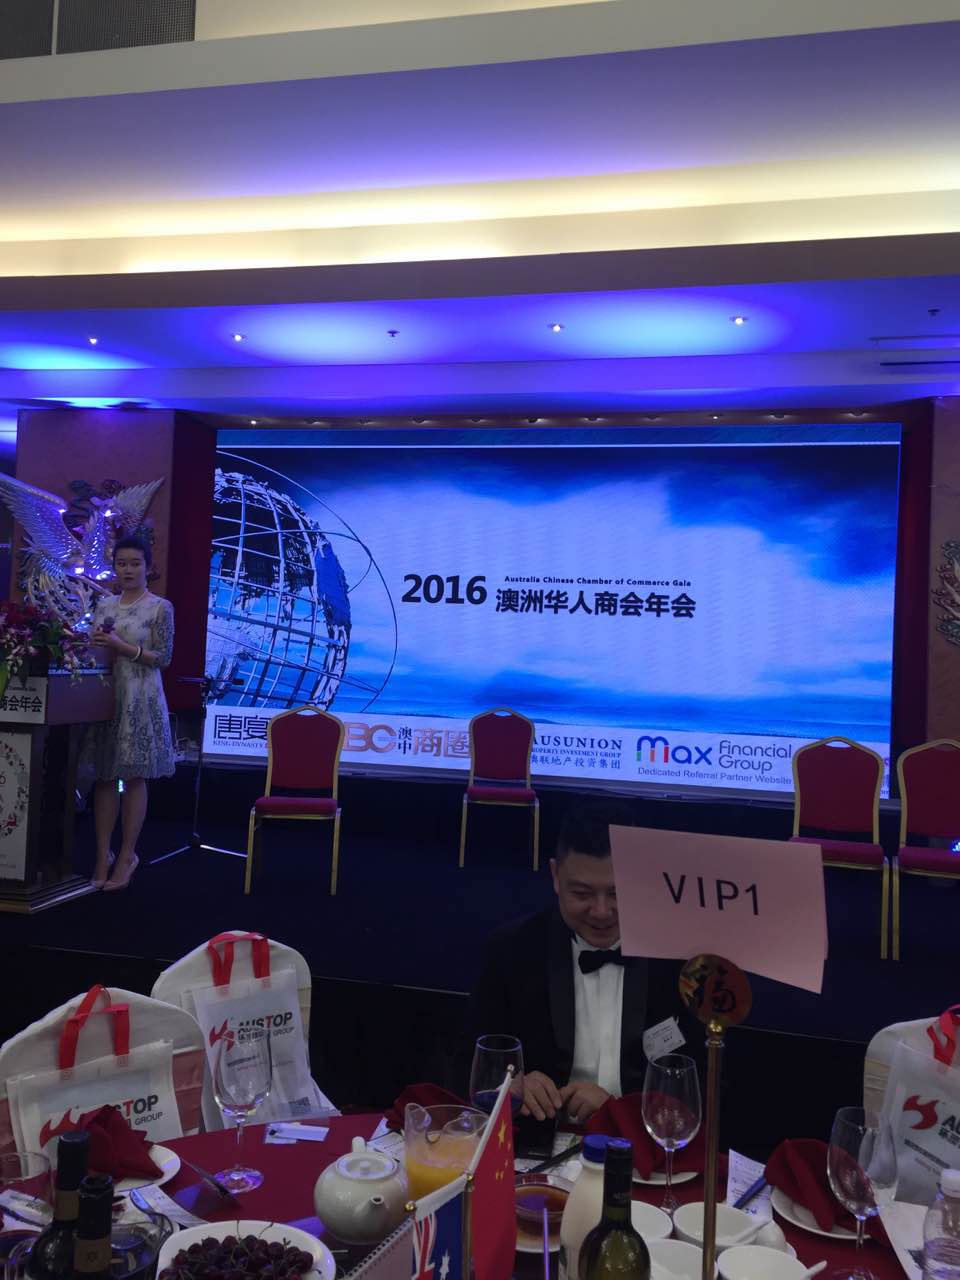 7 2016年澳洲华人商会年会在悉尼盛大举行  开创资源共享合作双赢新局面 